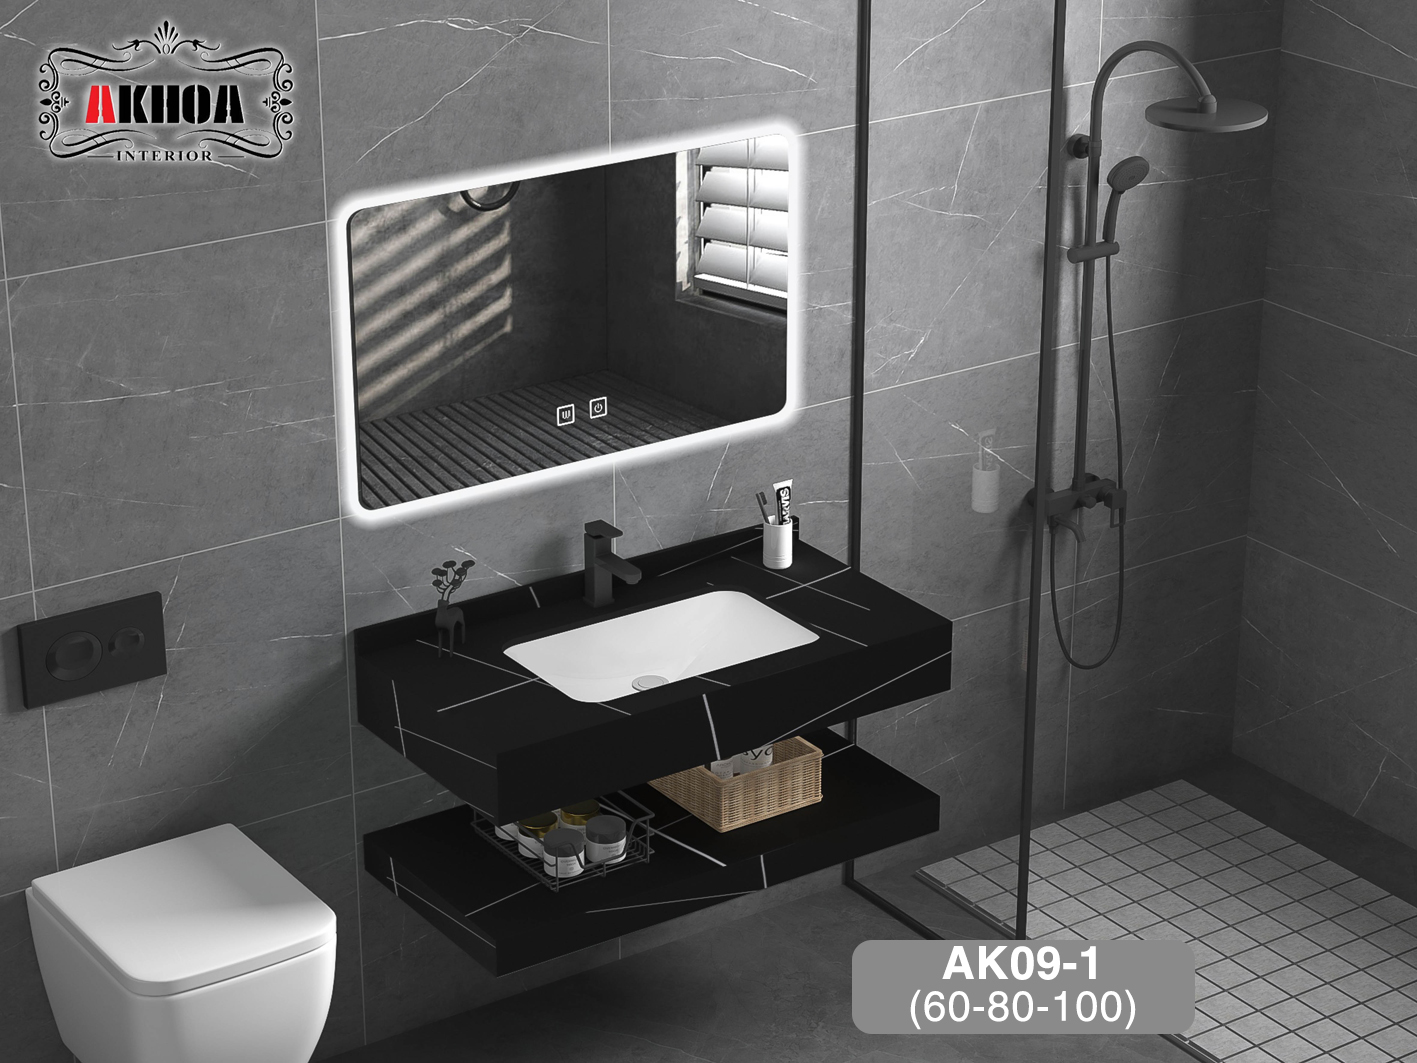 Tủ chậu lavabo mặt đá 2 tầng AKhoa AK09-1(60-80-100)